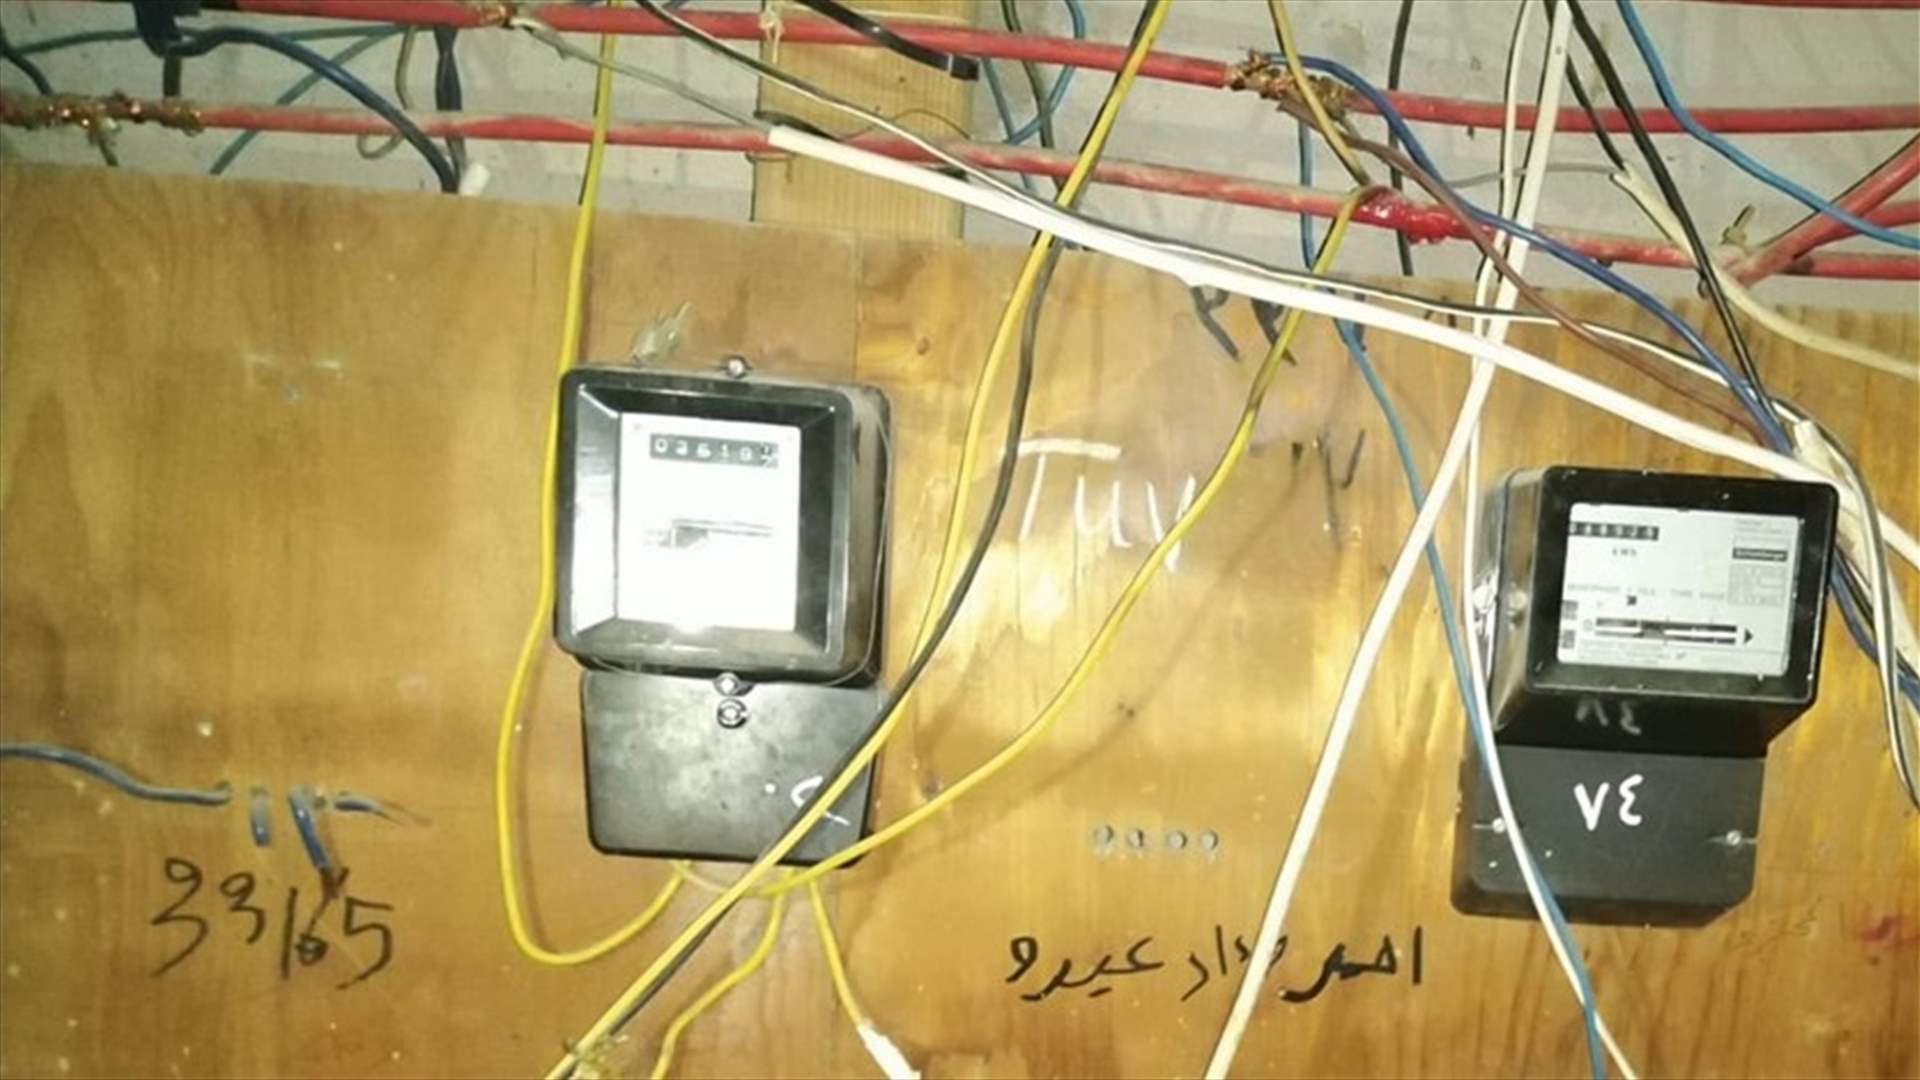 مجهولون يسرقون عدادات الكهرباء من مبنى سكني في صيدا ...